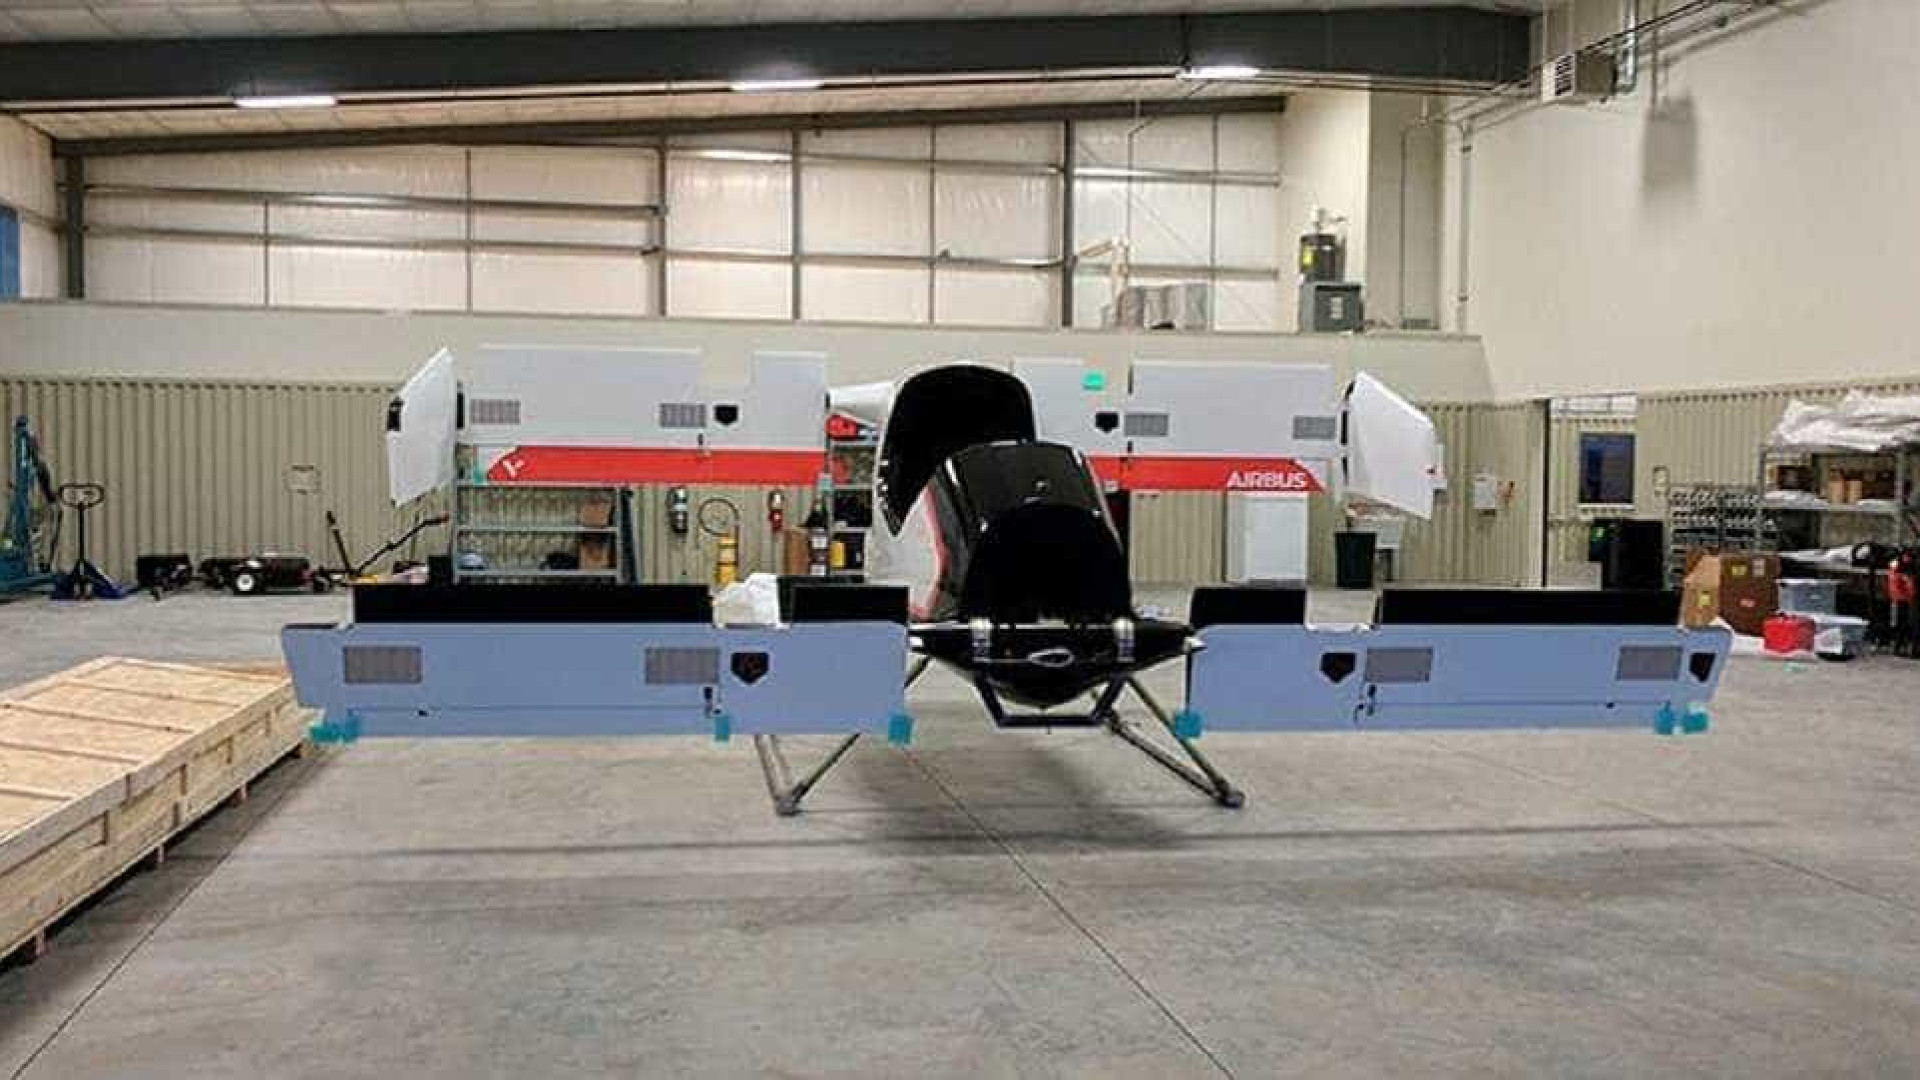 Confira as primeiras imagens do protótipo de táxi voador